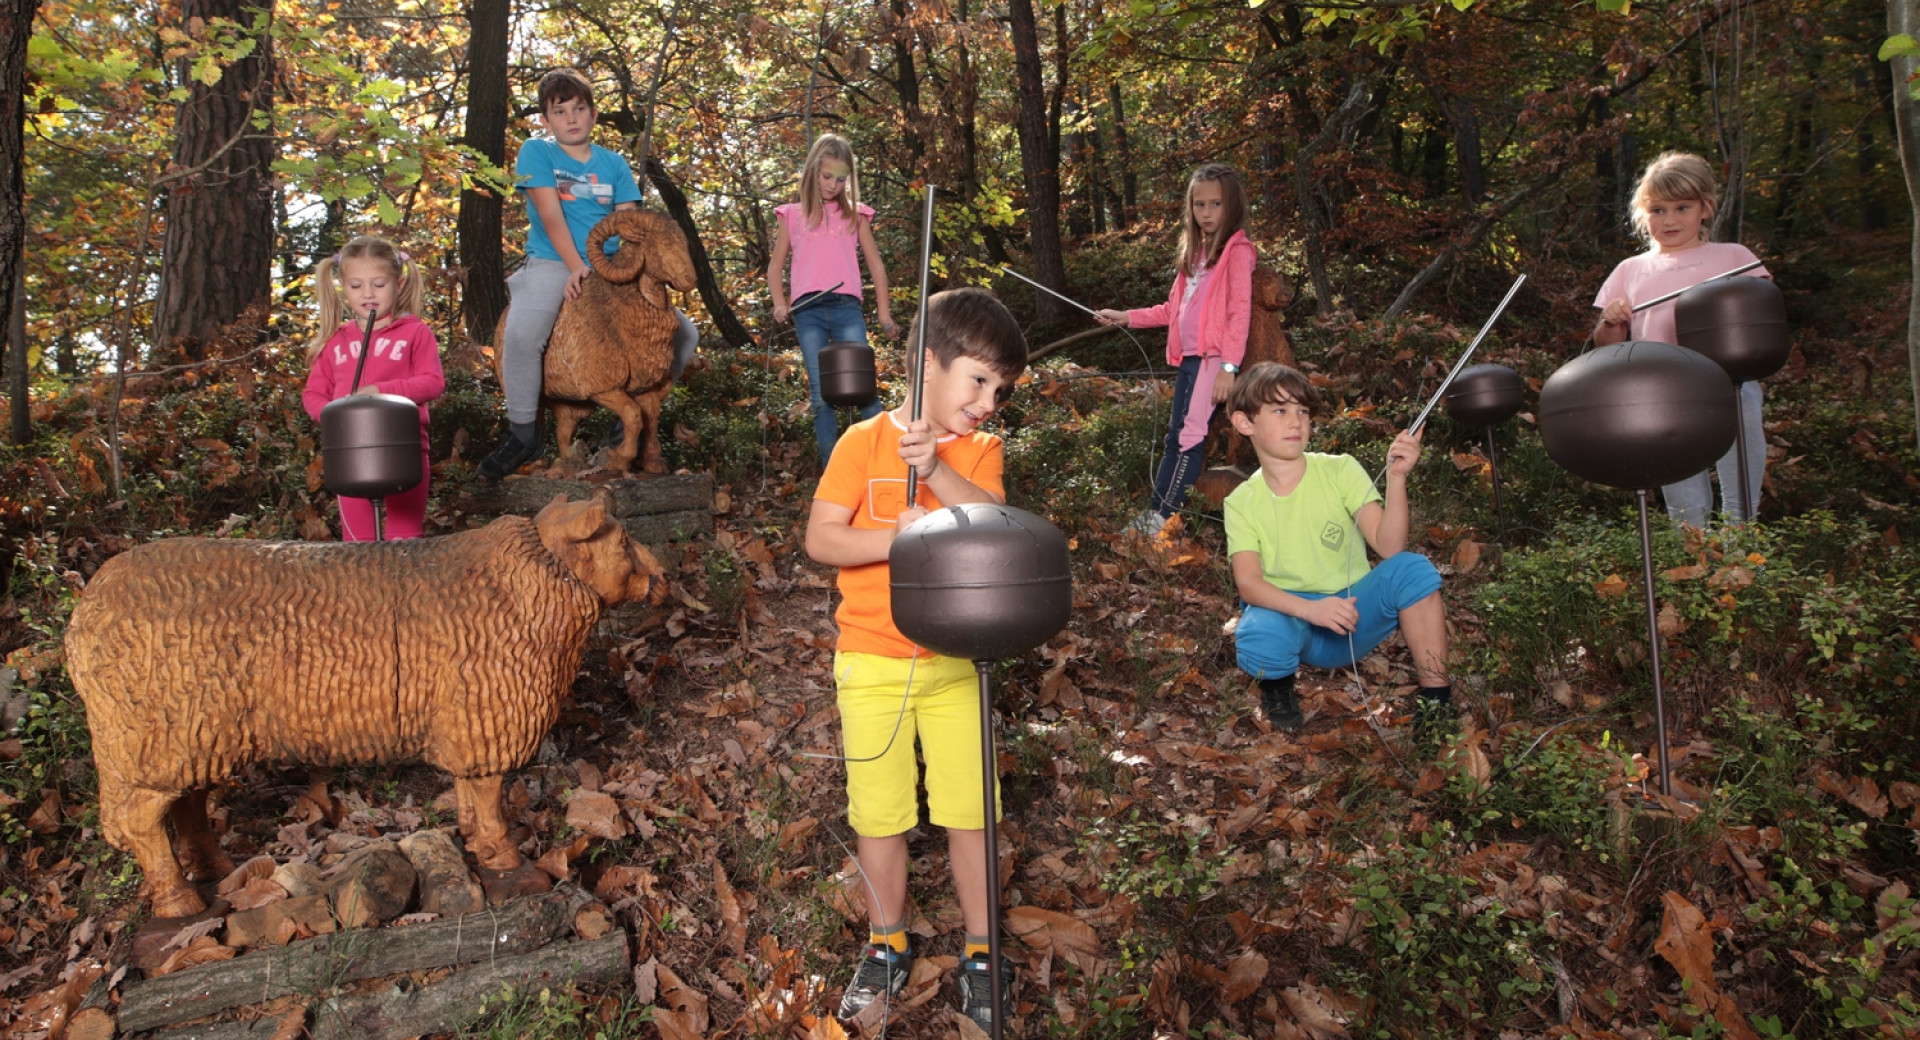 Otroci med lesenimi skulpturami živali in glasbili v gozdu na poti Zven zaklete grofice na Dobrovi